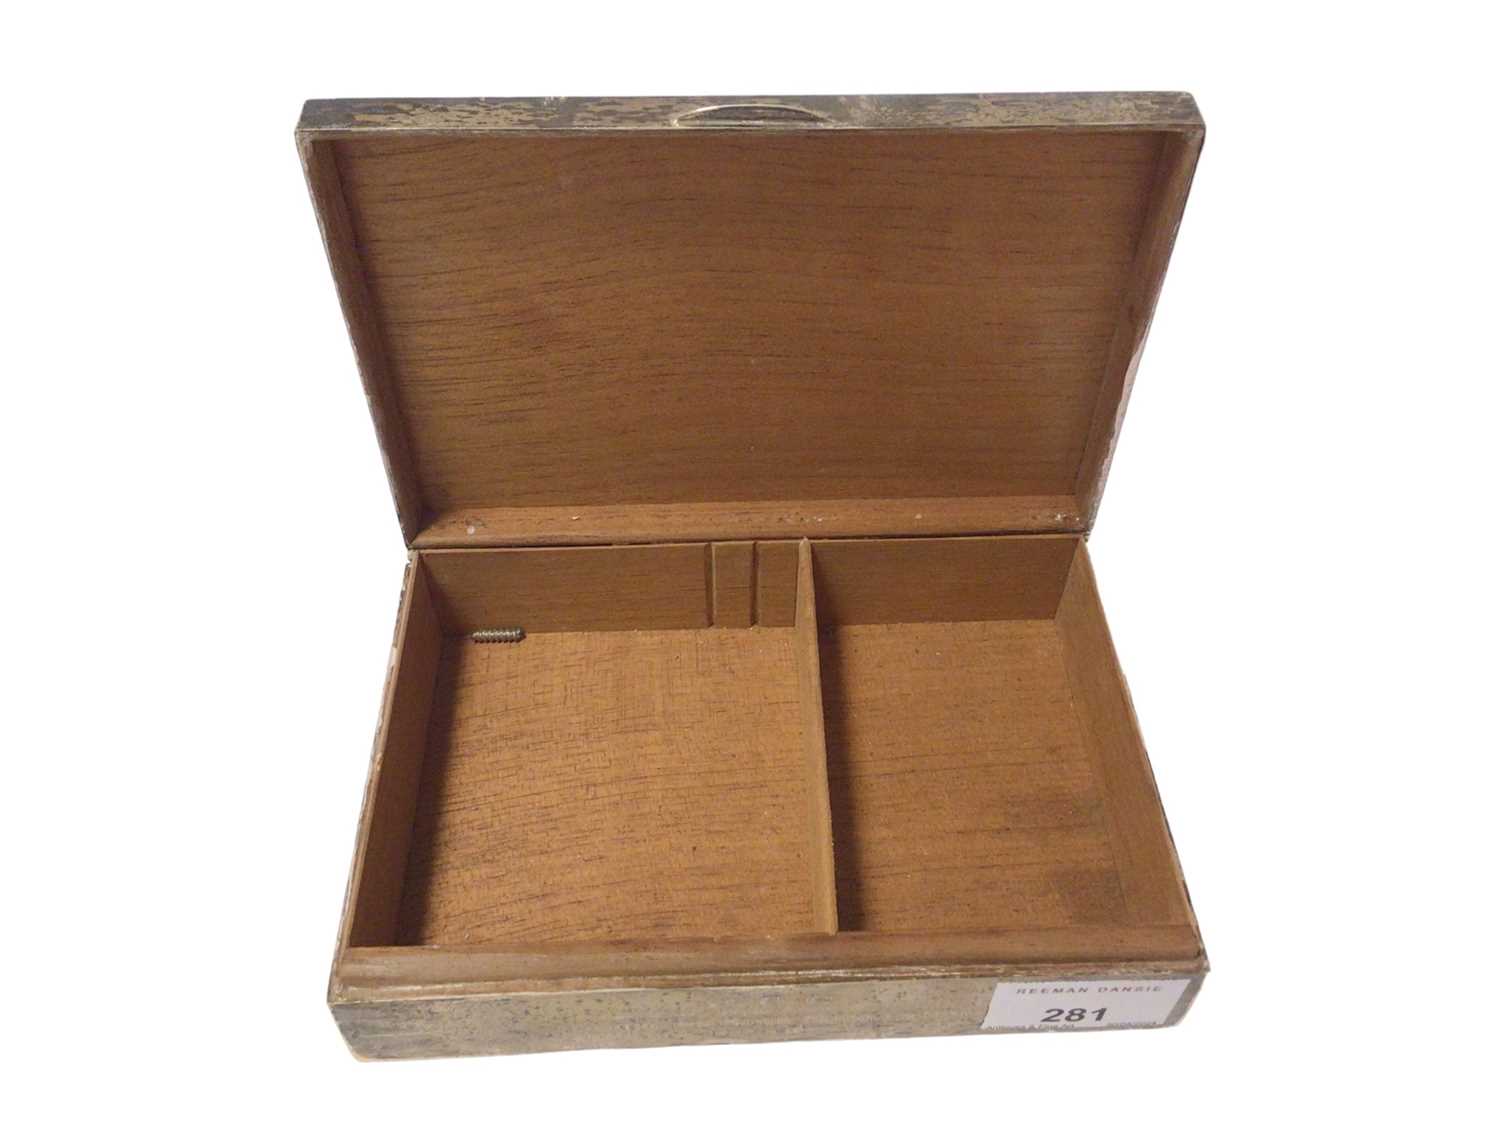 1940s silver cigarette box with presentation inscription - Image 2 of 4